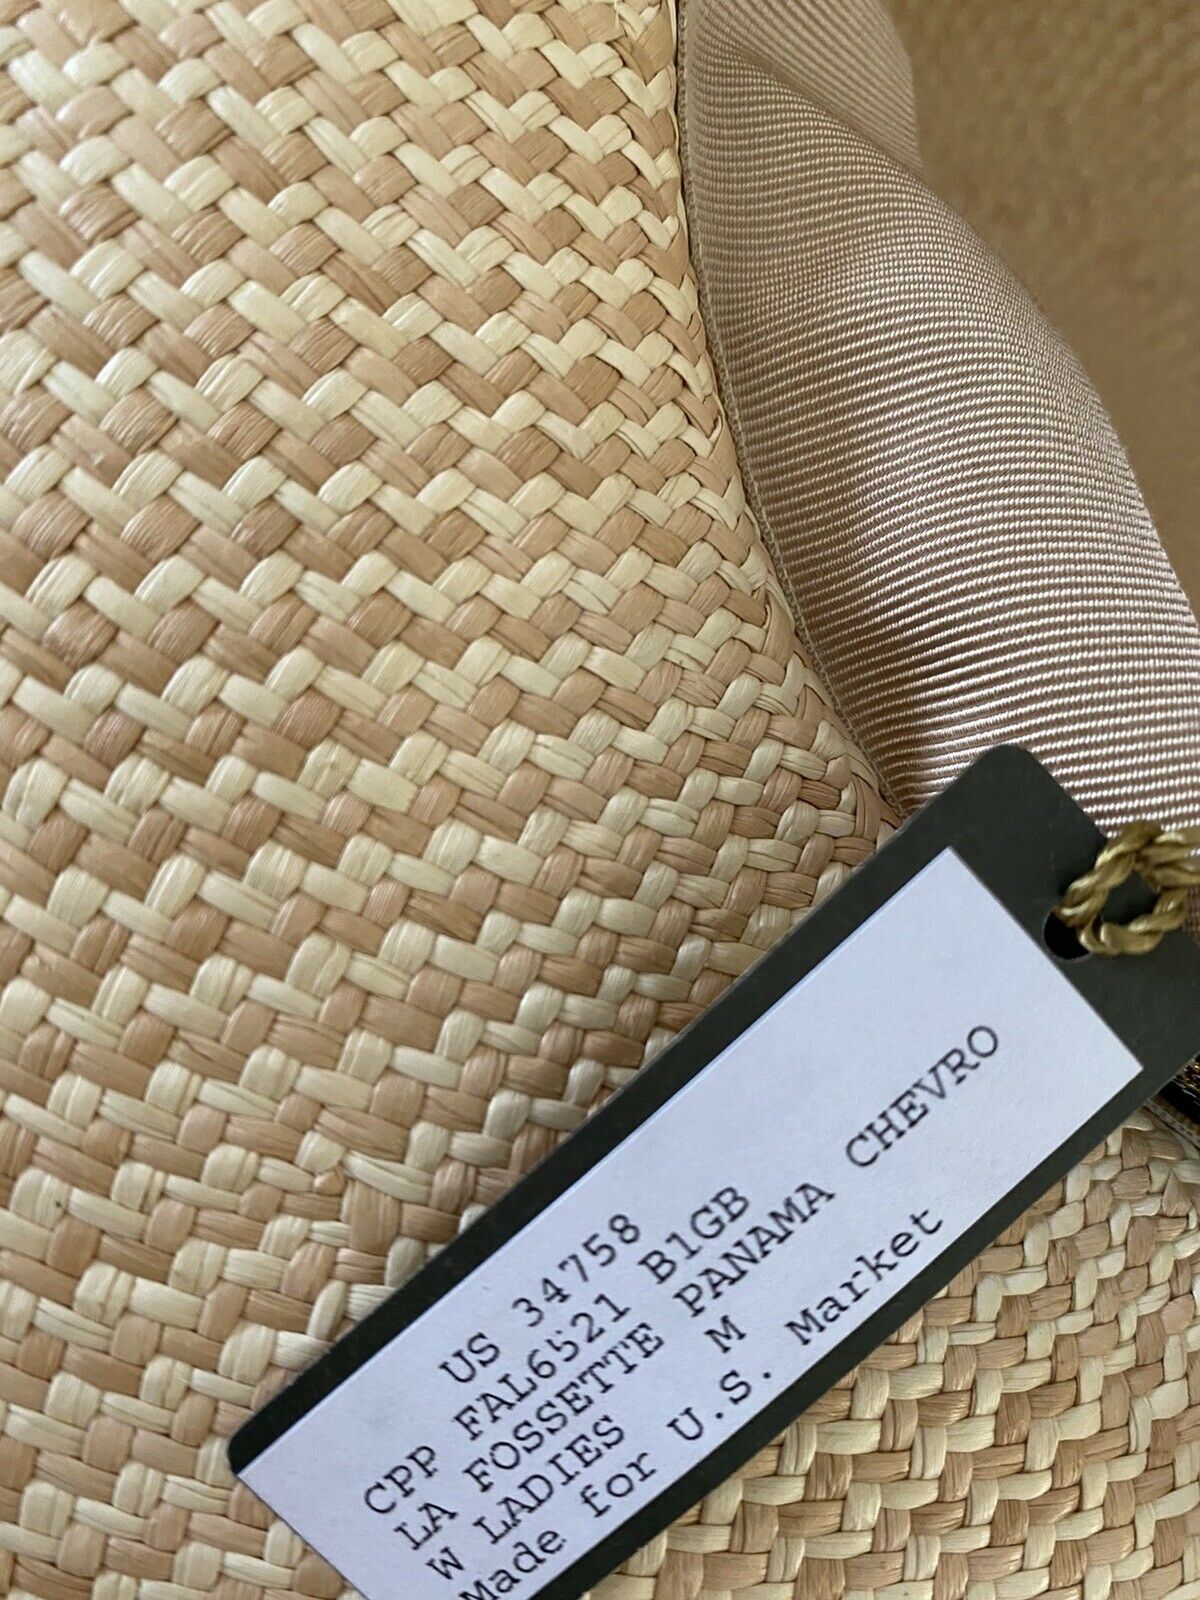 NWT $750 Loro Piana Женское La Fossette Панама Соломенная шляпа Натуральный песок M Италия